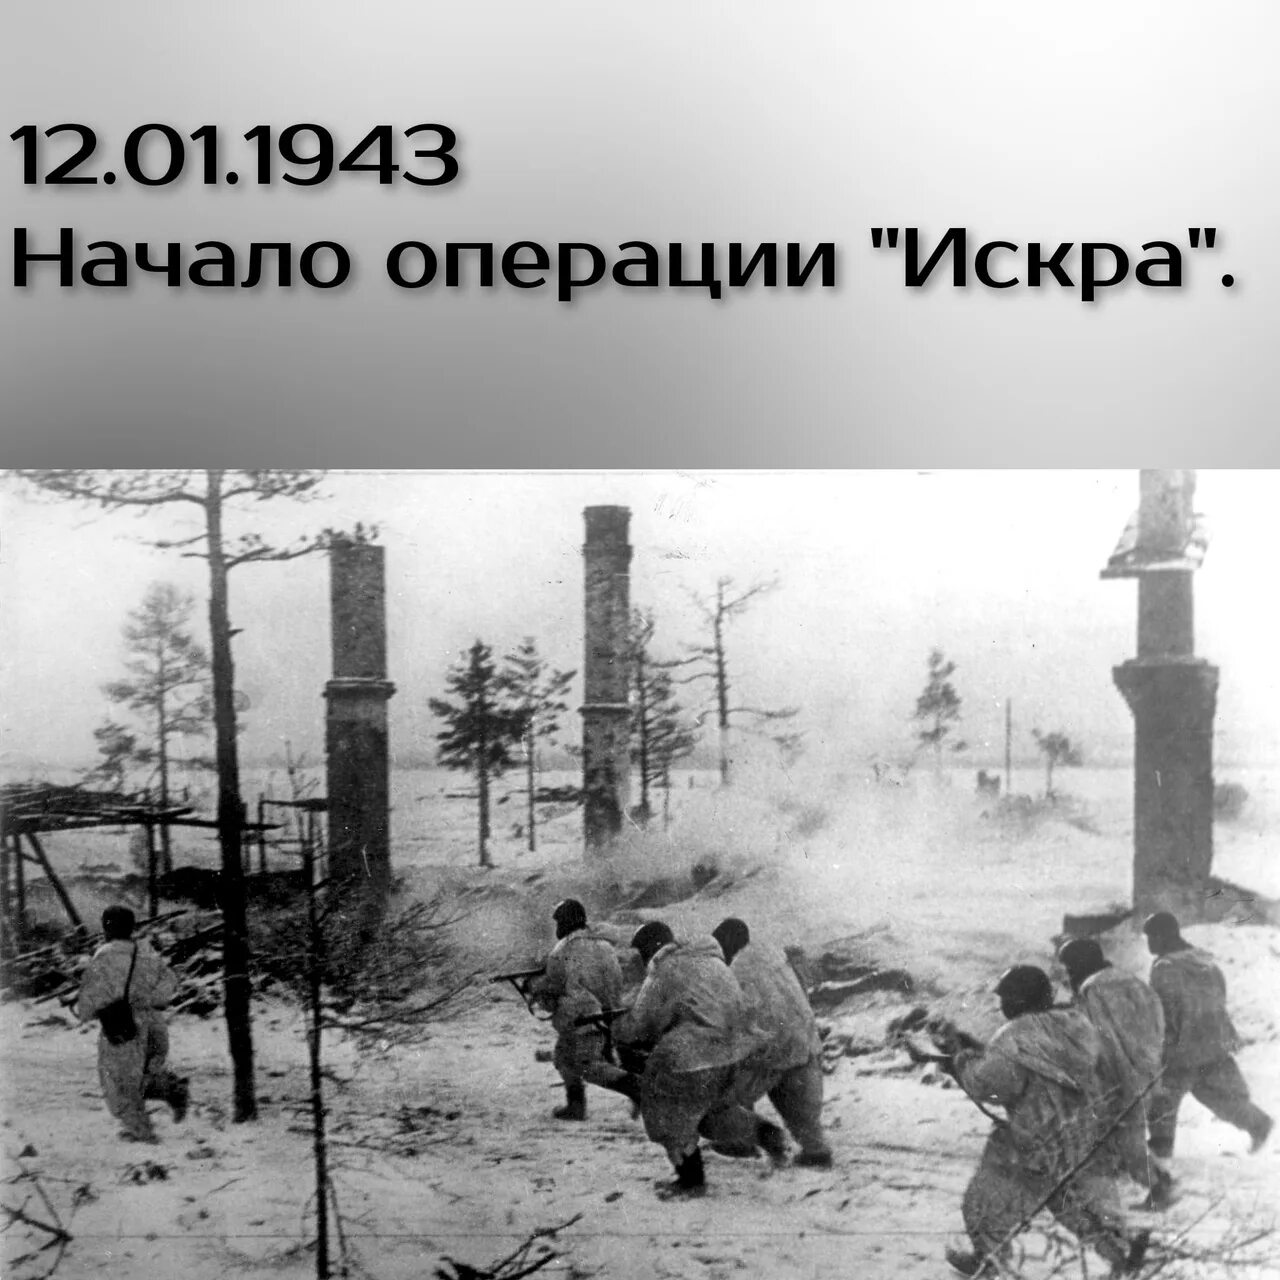 Прорыв блокады название операции. Прорыв блокады 1943. Январь 1943 прорыв блокады Ленинграда.